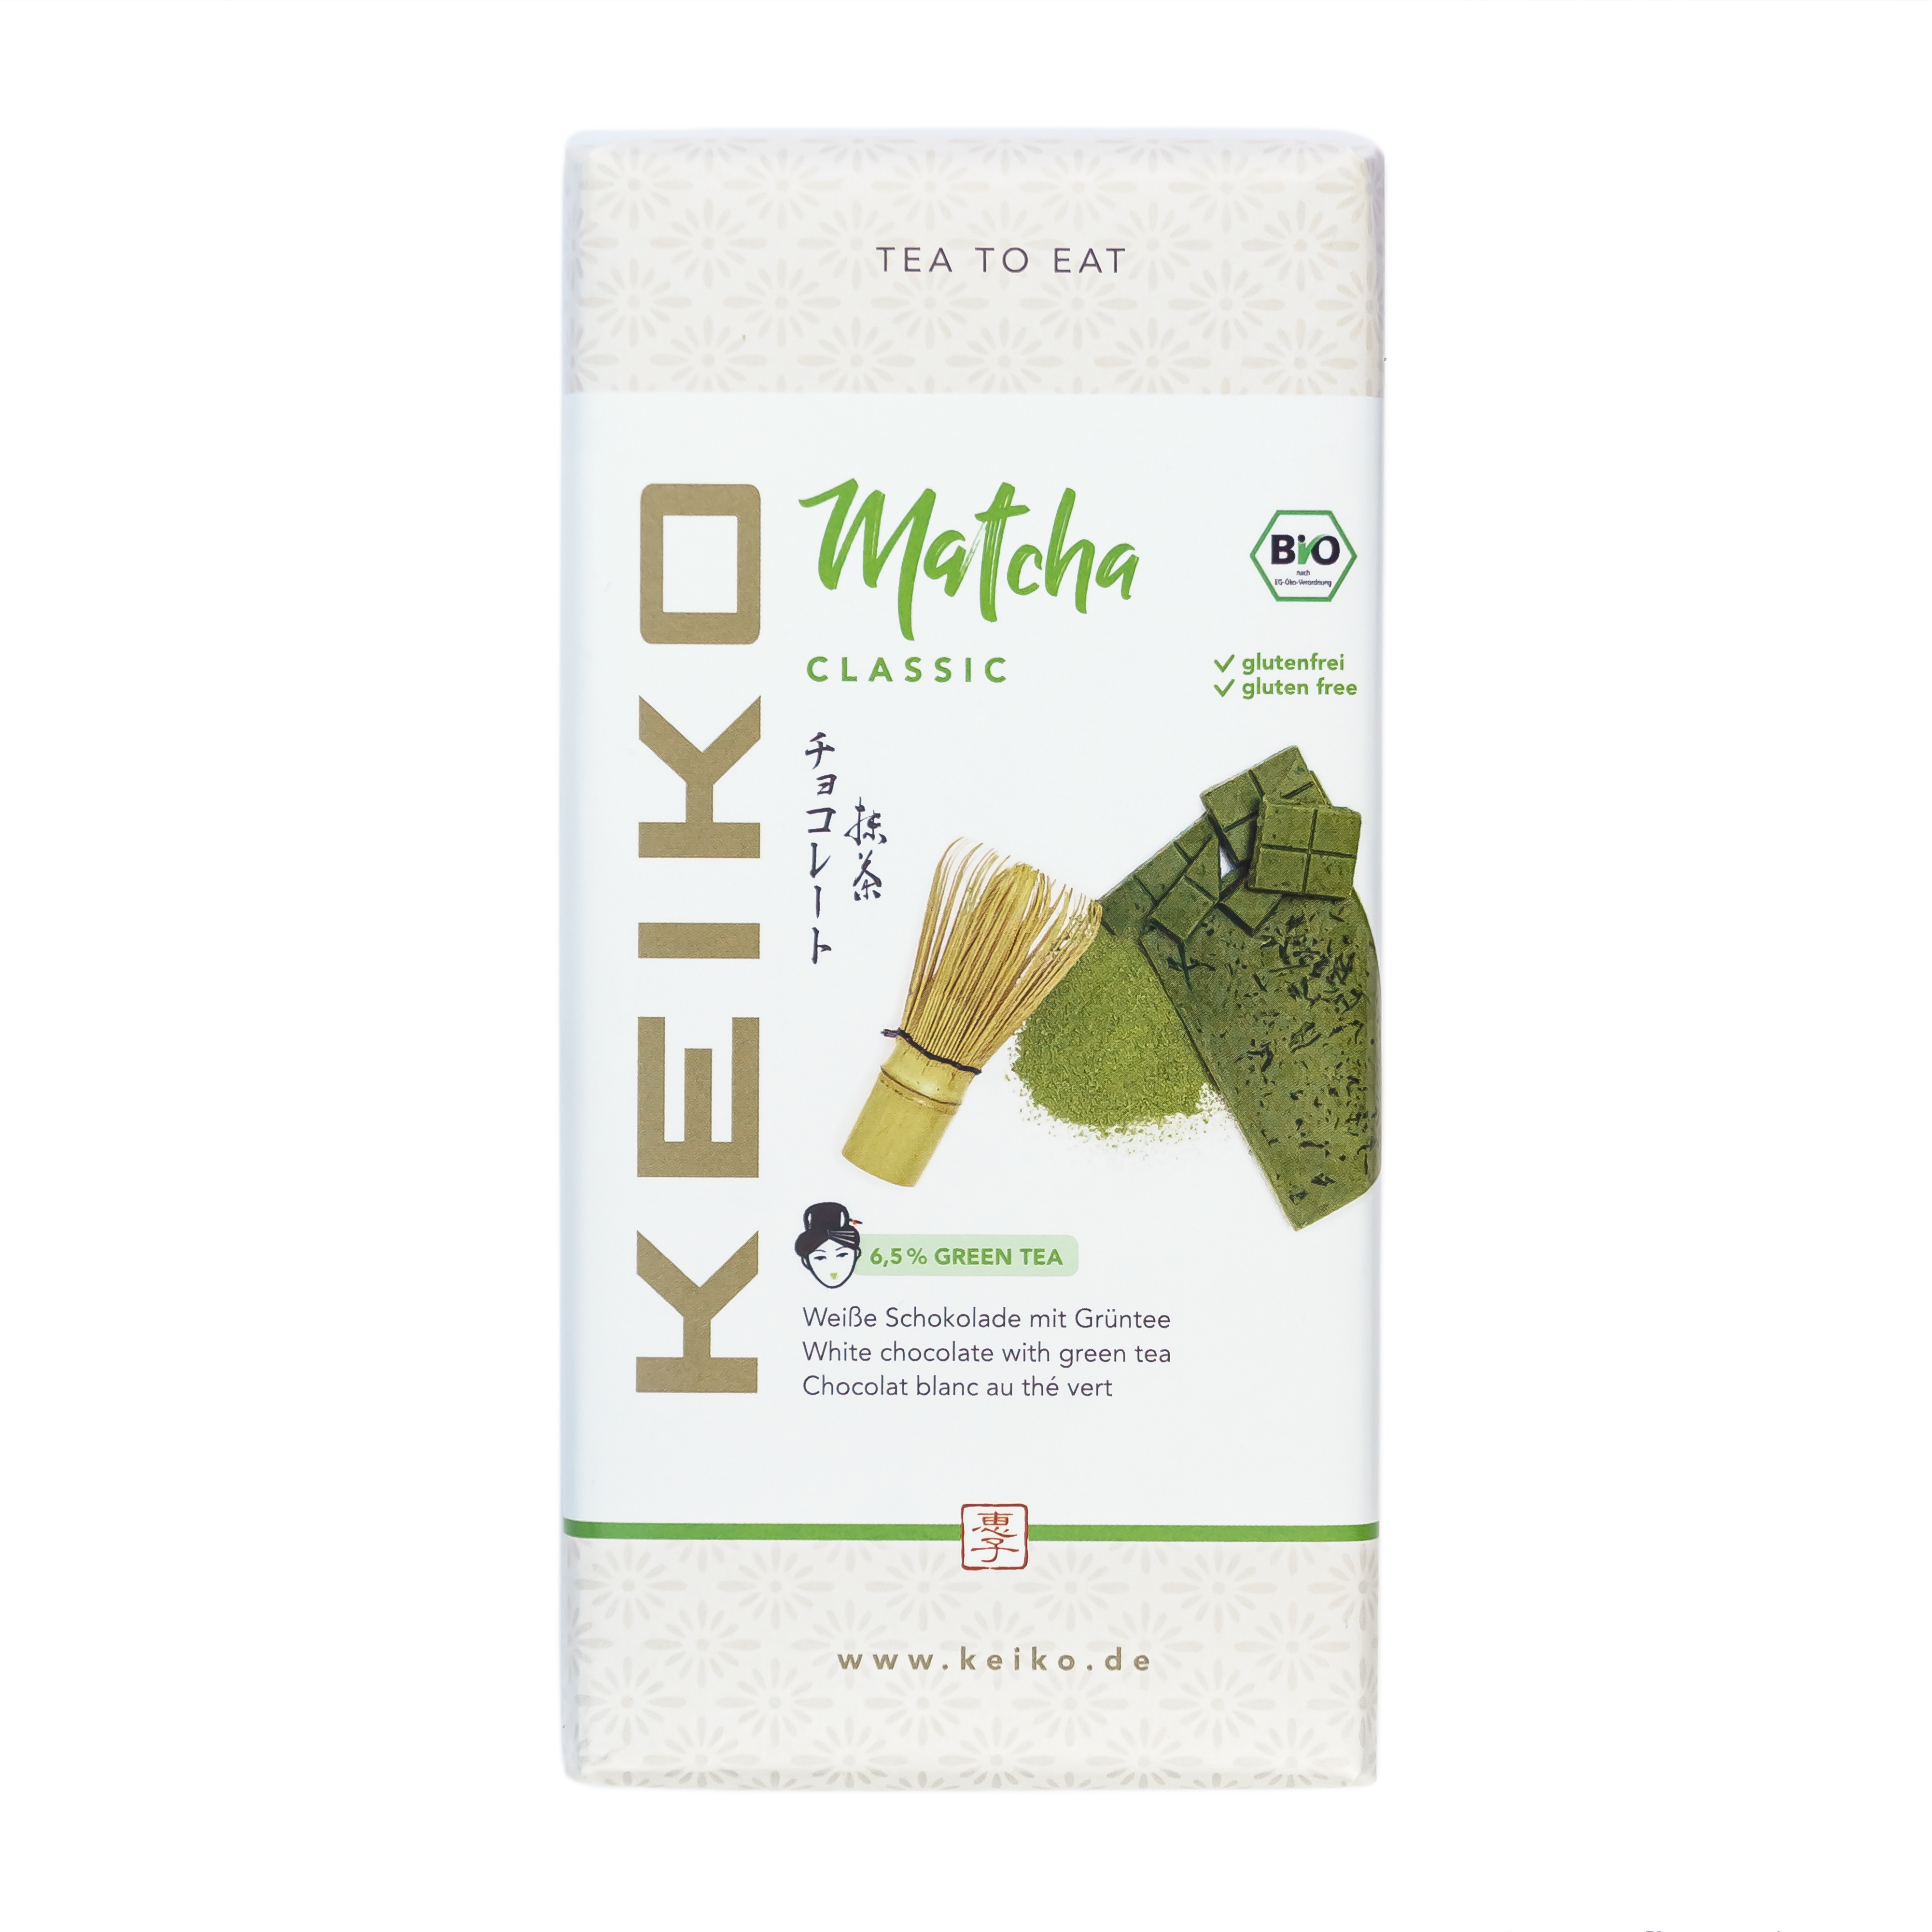 KEIKO Matcha Classic White Chocolate with Green Tea, organic